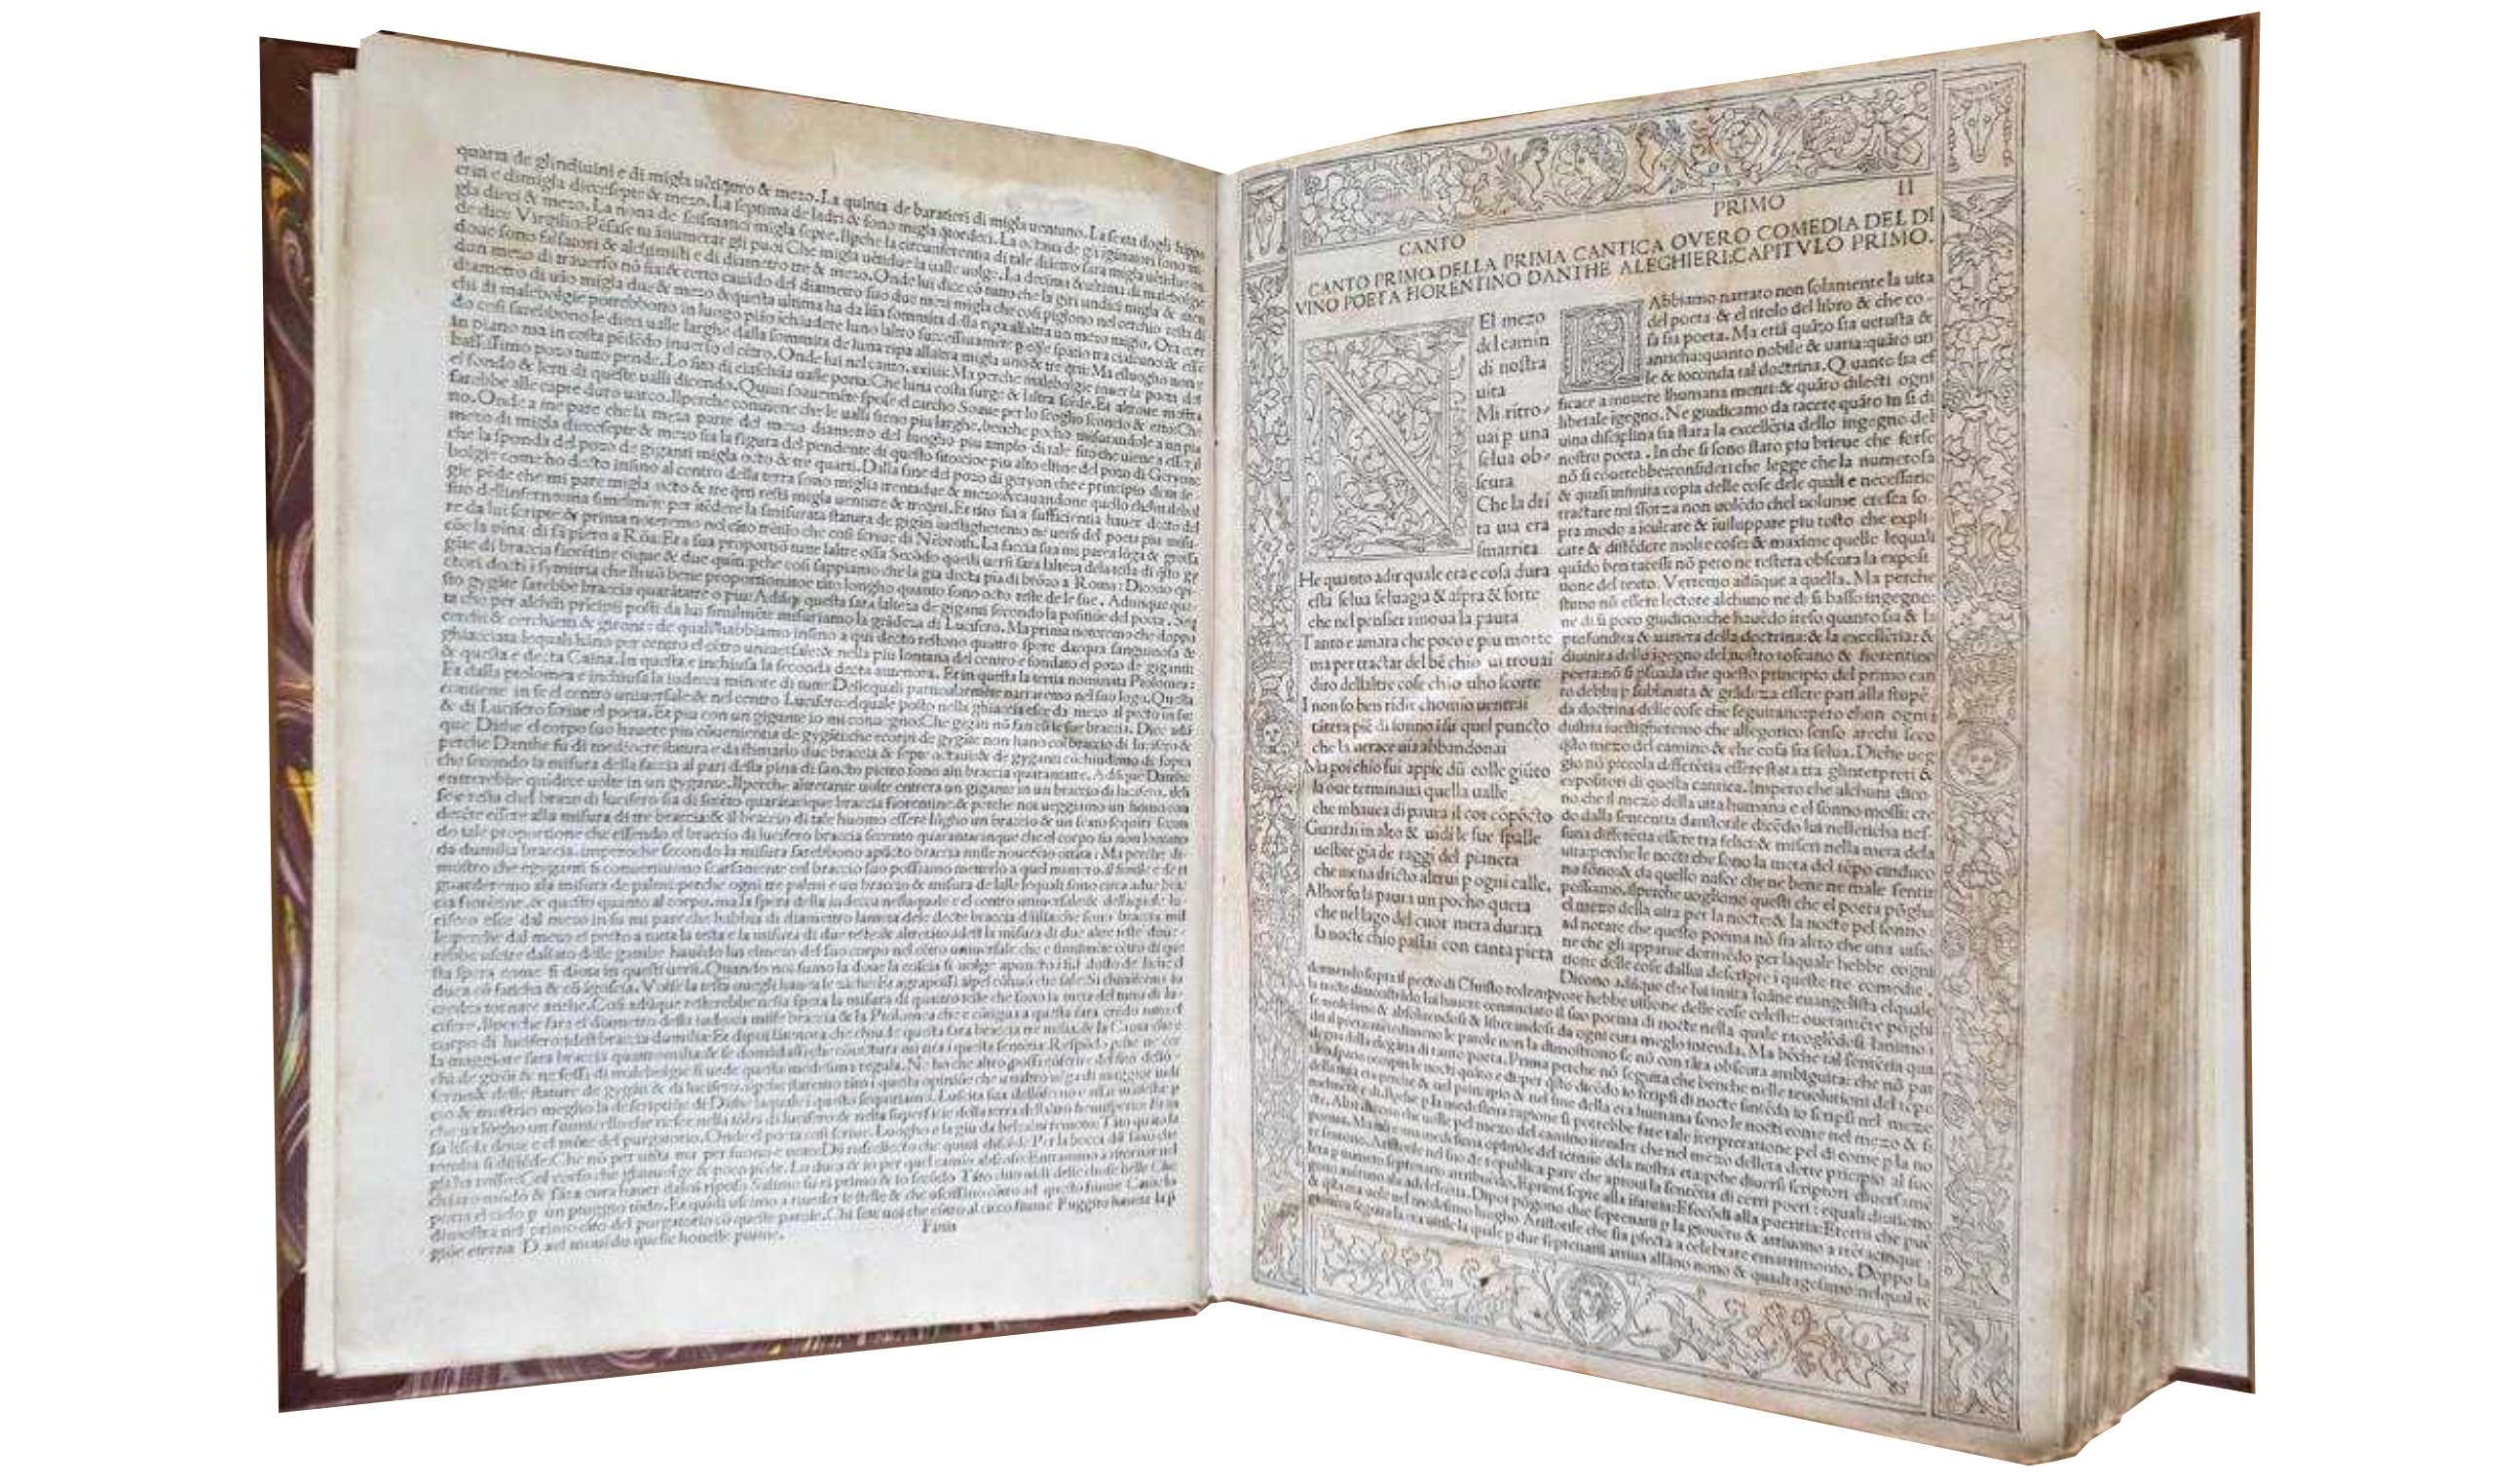 Eine Divina Commedia von 1493, fachmännisch restauriert in der Biblioteca Capitolare von Verona